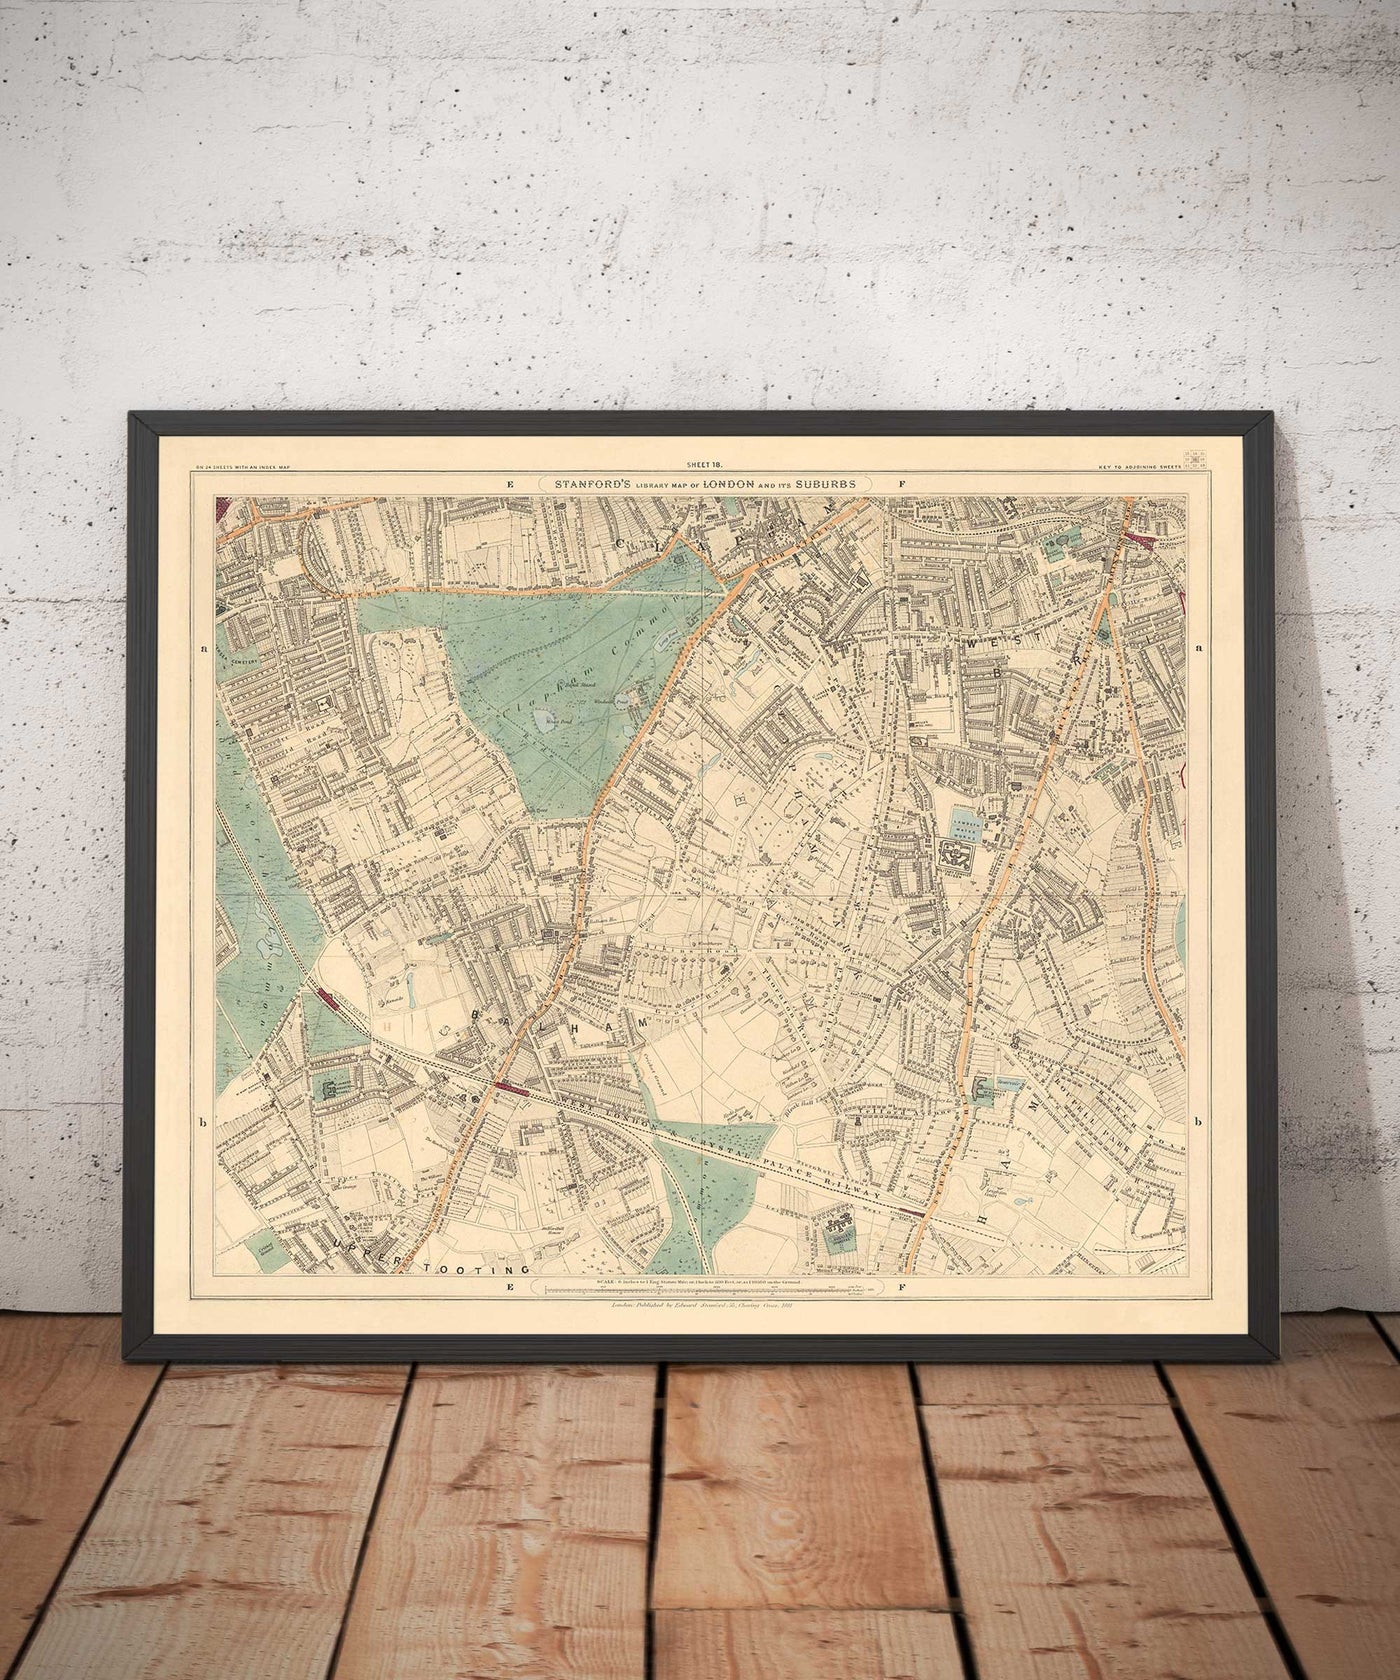 Antiguo mapa en color del sur de Londres, 1891 - Clapham, Balham, Brixton, Tooting, Common, Park - SW2, SW4, SW12, SW17, SW11